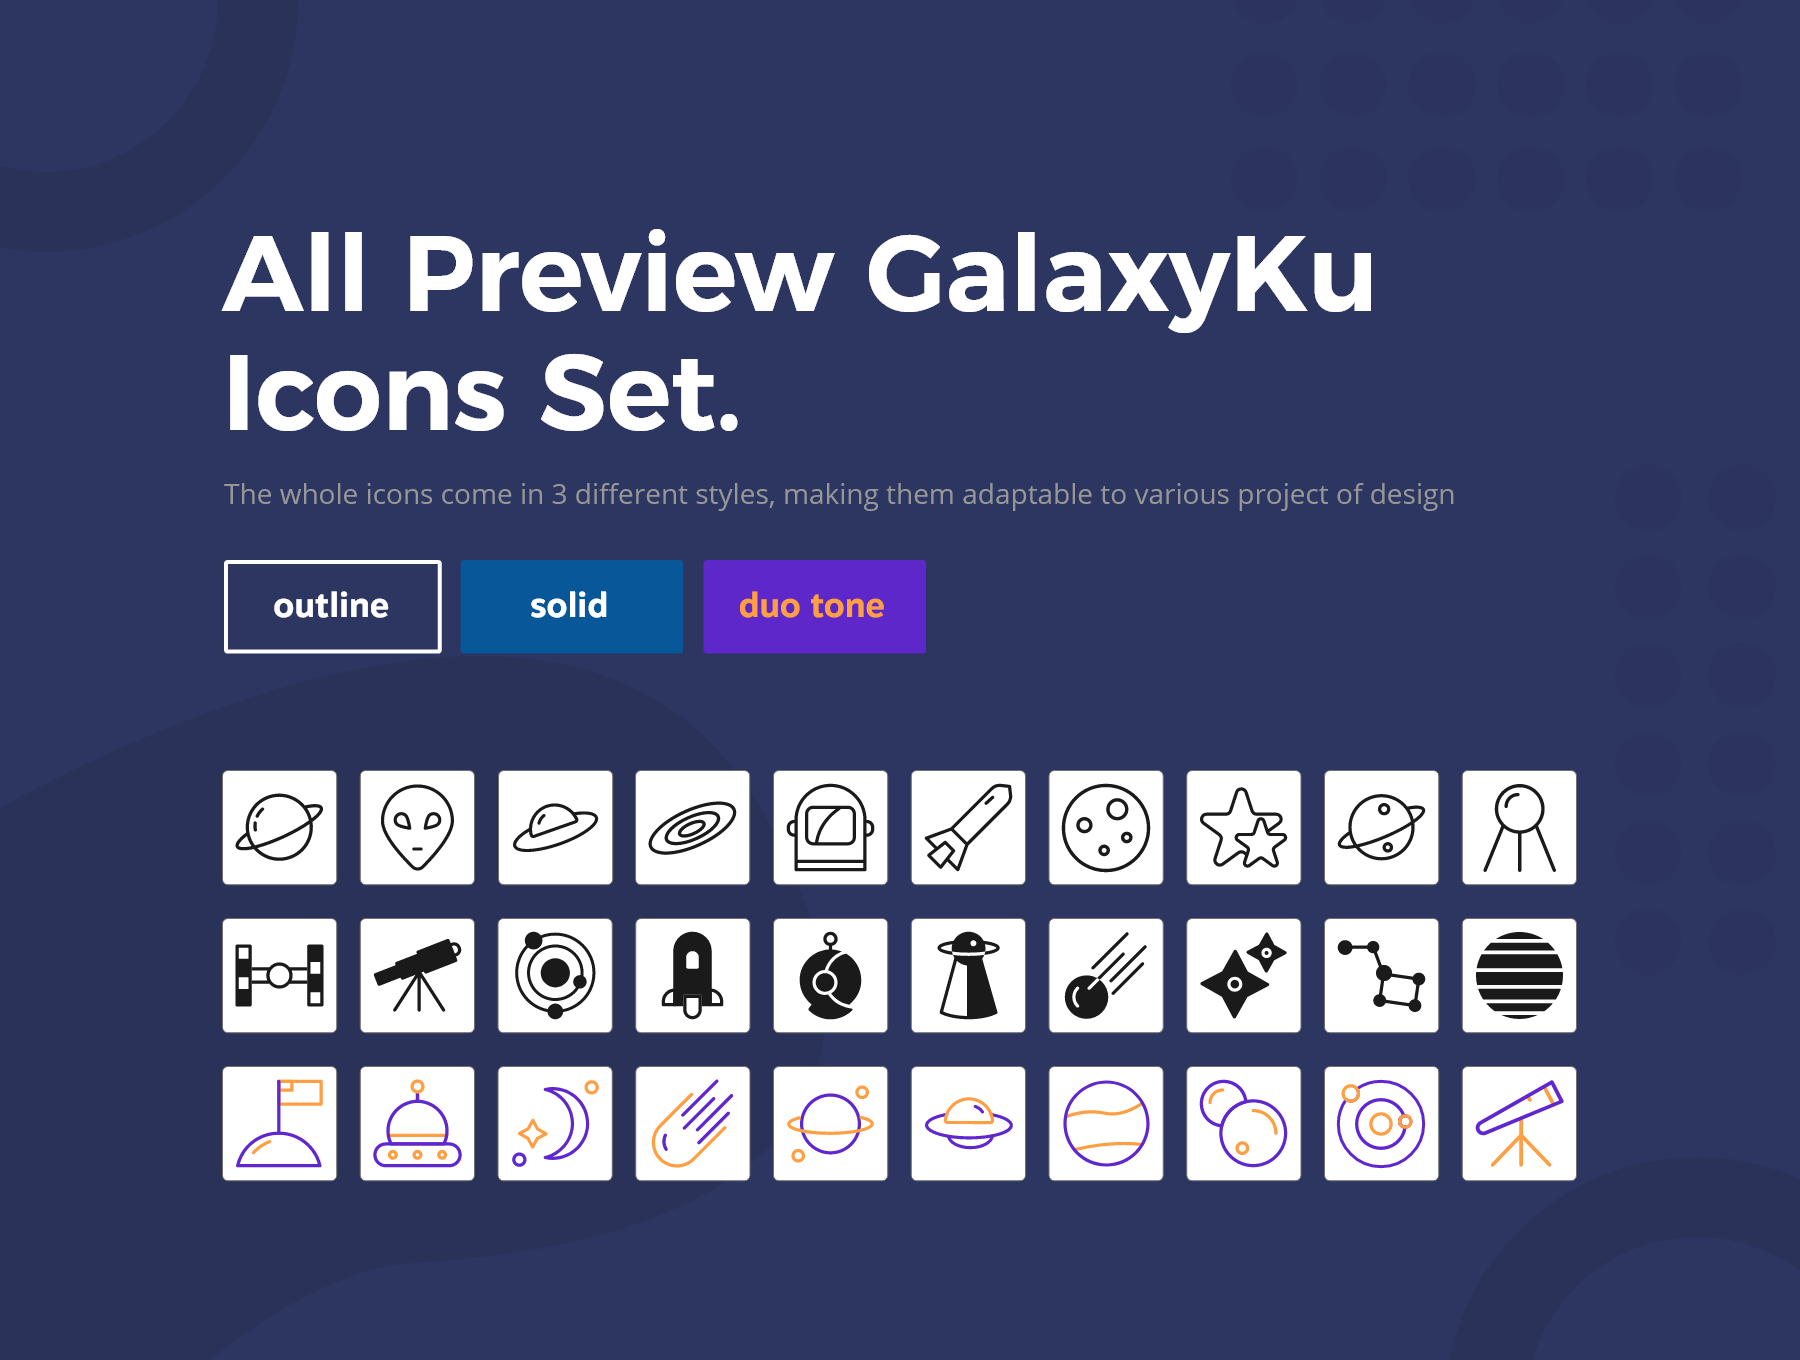 1222 30款太空系列手机icon小图标素材下载 GalaxyKu Space Icons